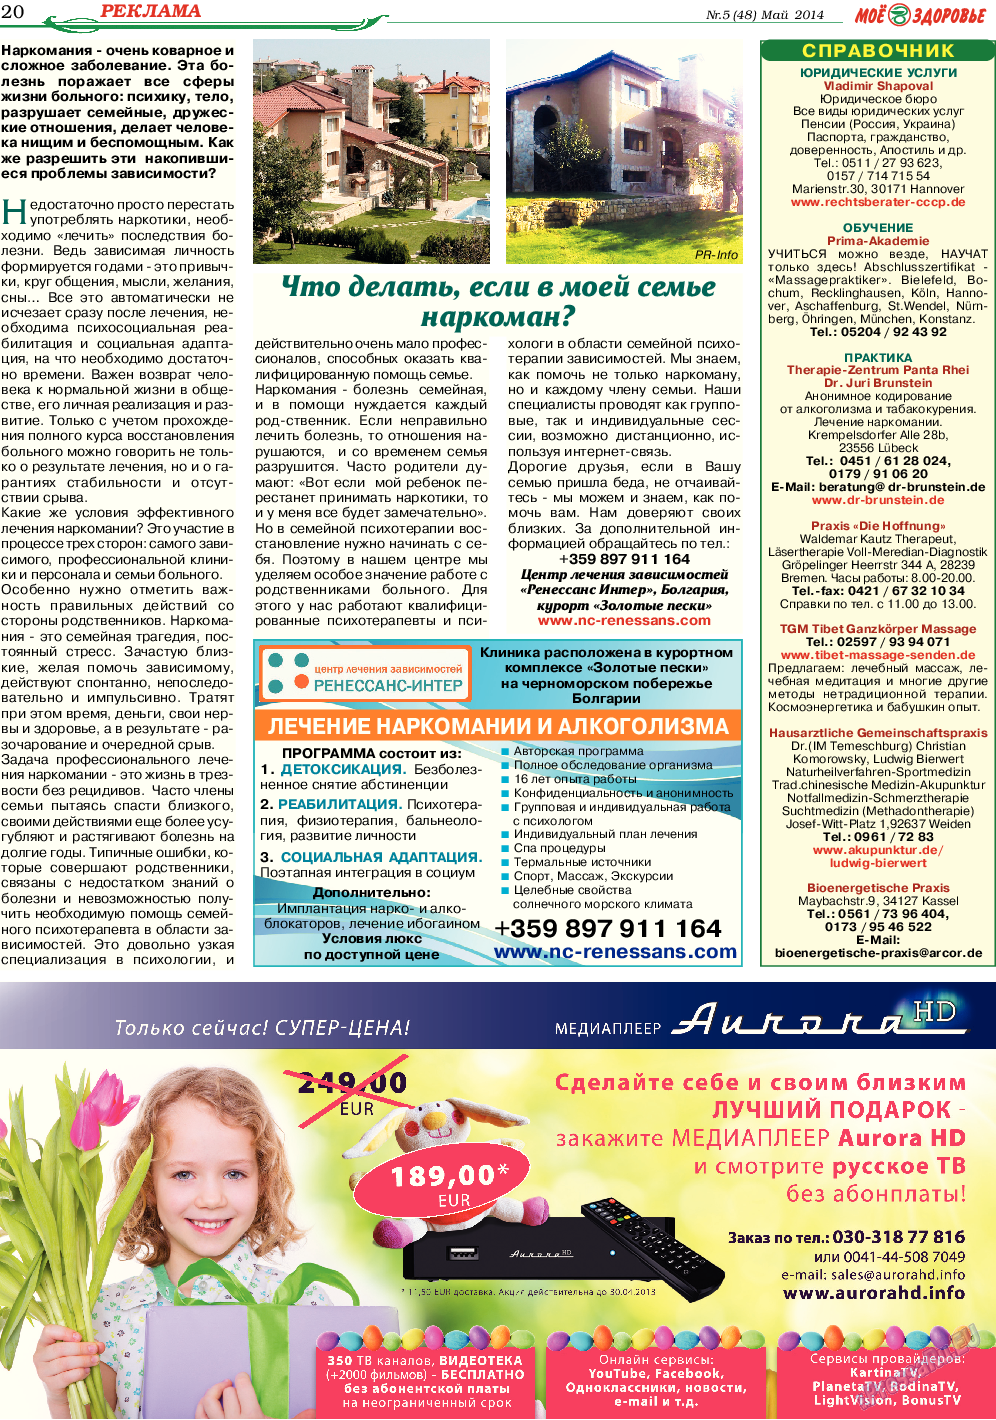 Кругозор (газета). 2014 год, номер 5, стр. 20